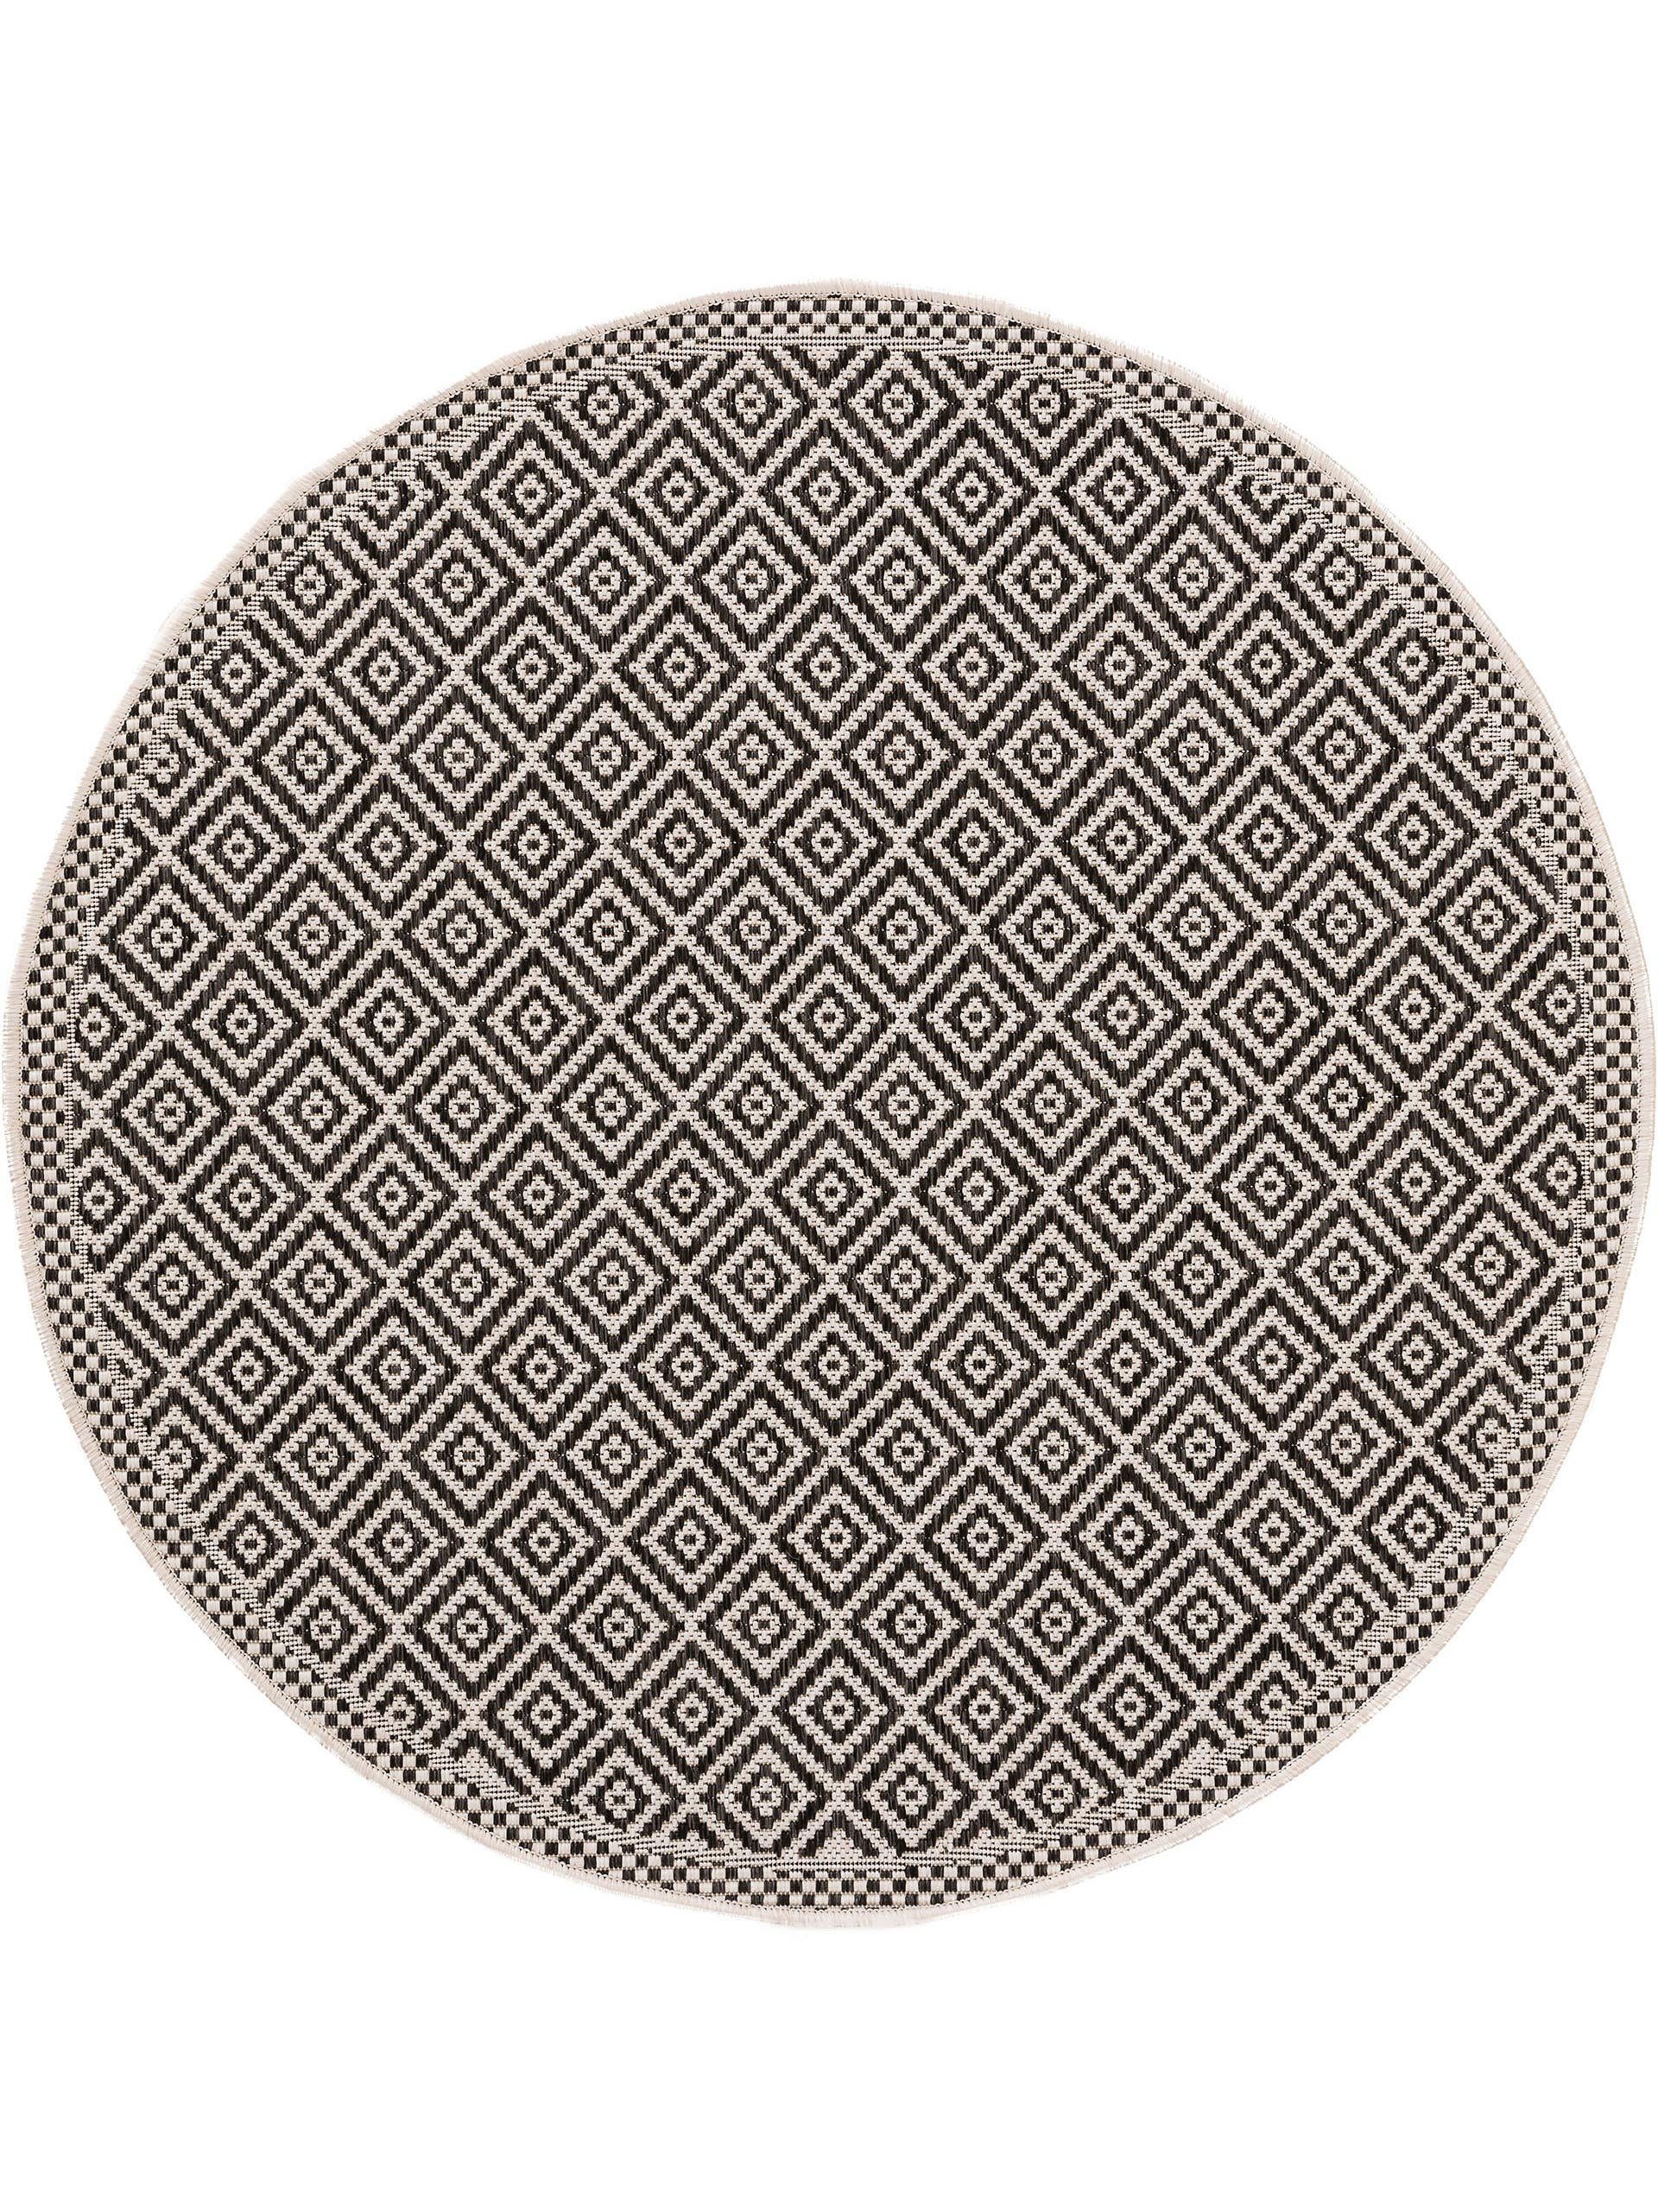 Outdoorteppich Cleo, benuta, rund, Höhe: 5 mm, Kunstfaser, Berber, Ethno-Style, Wohnzimmer